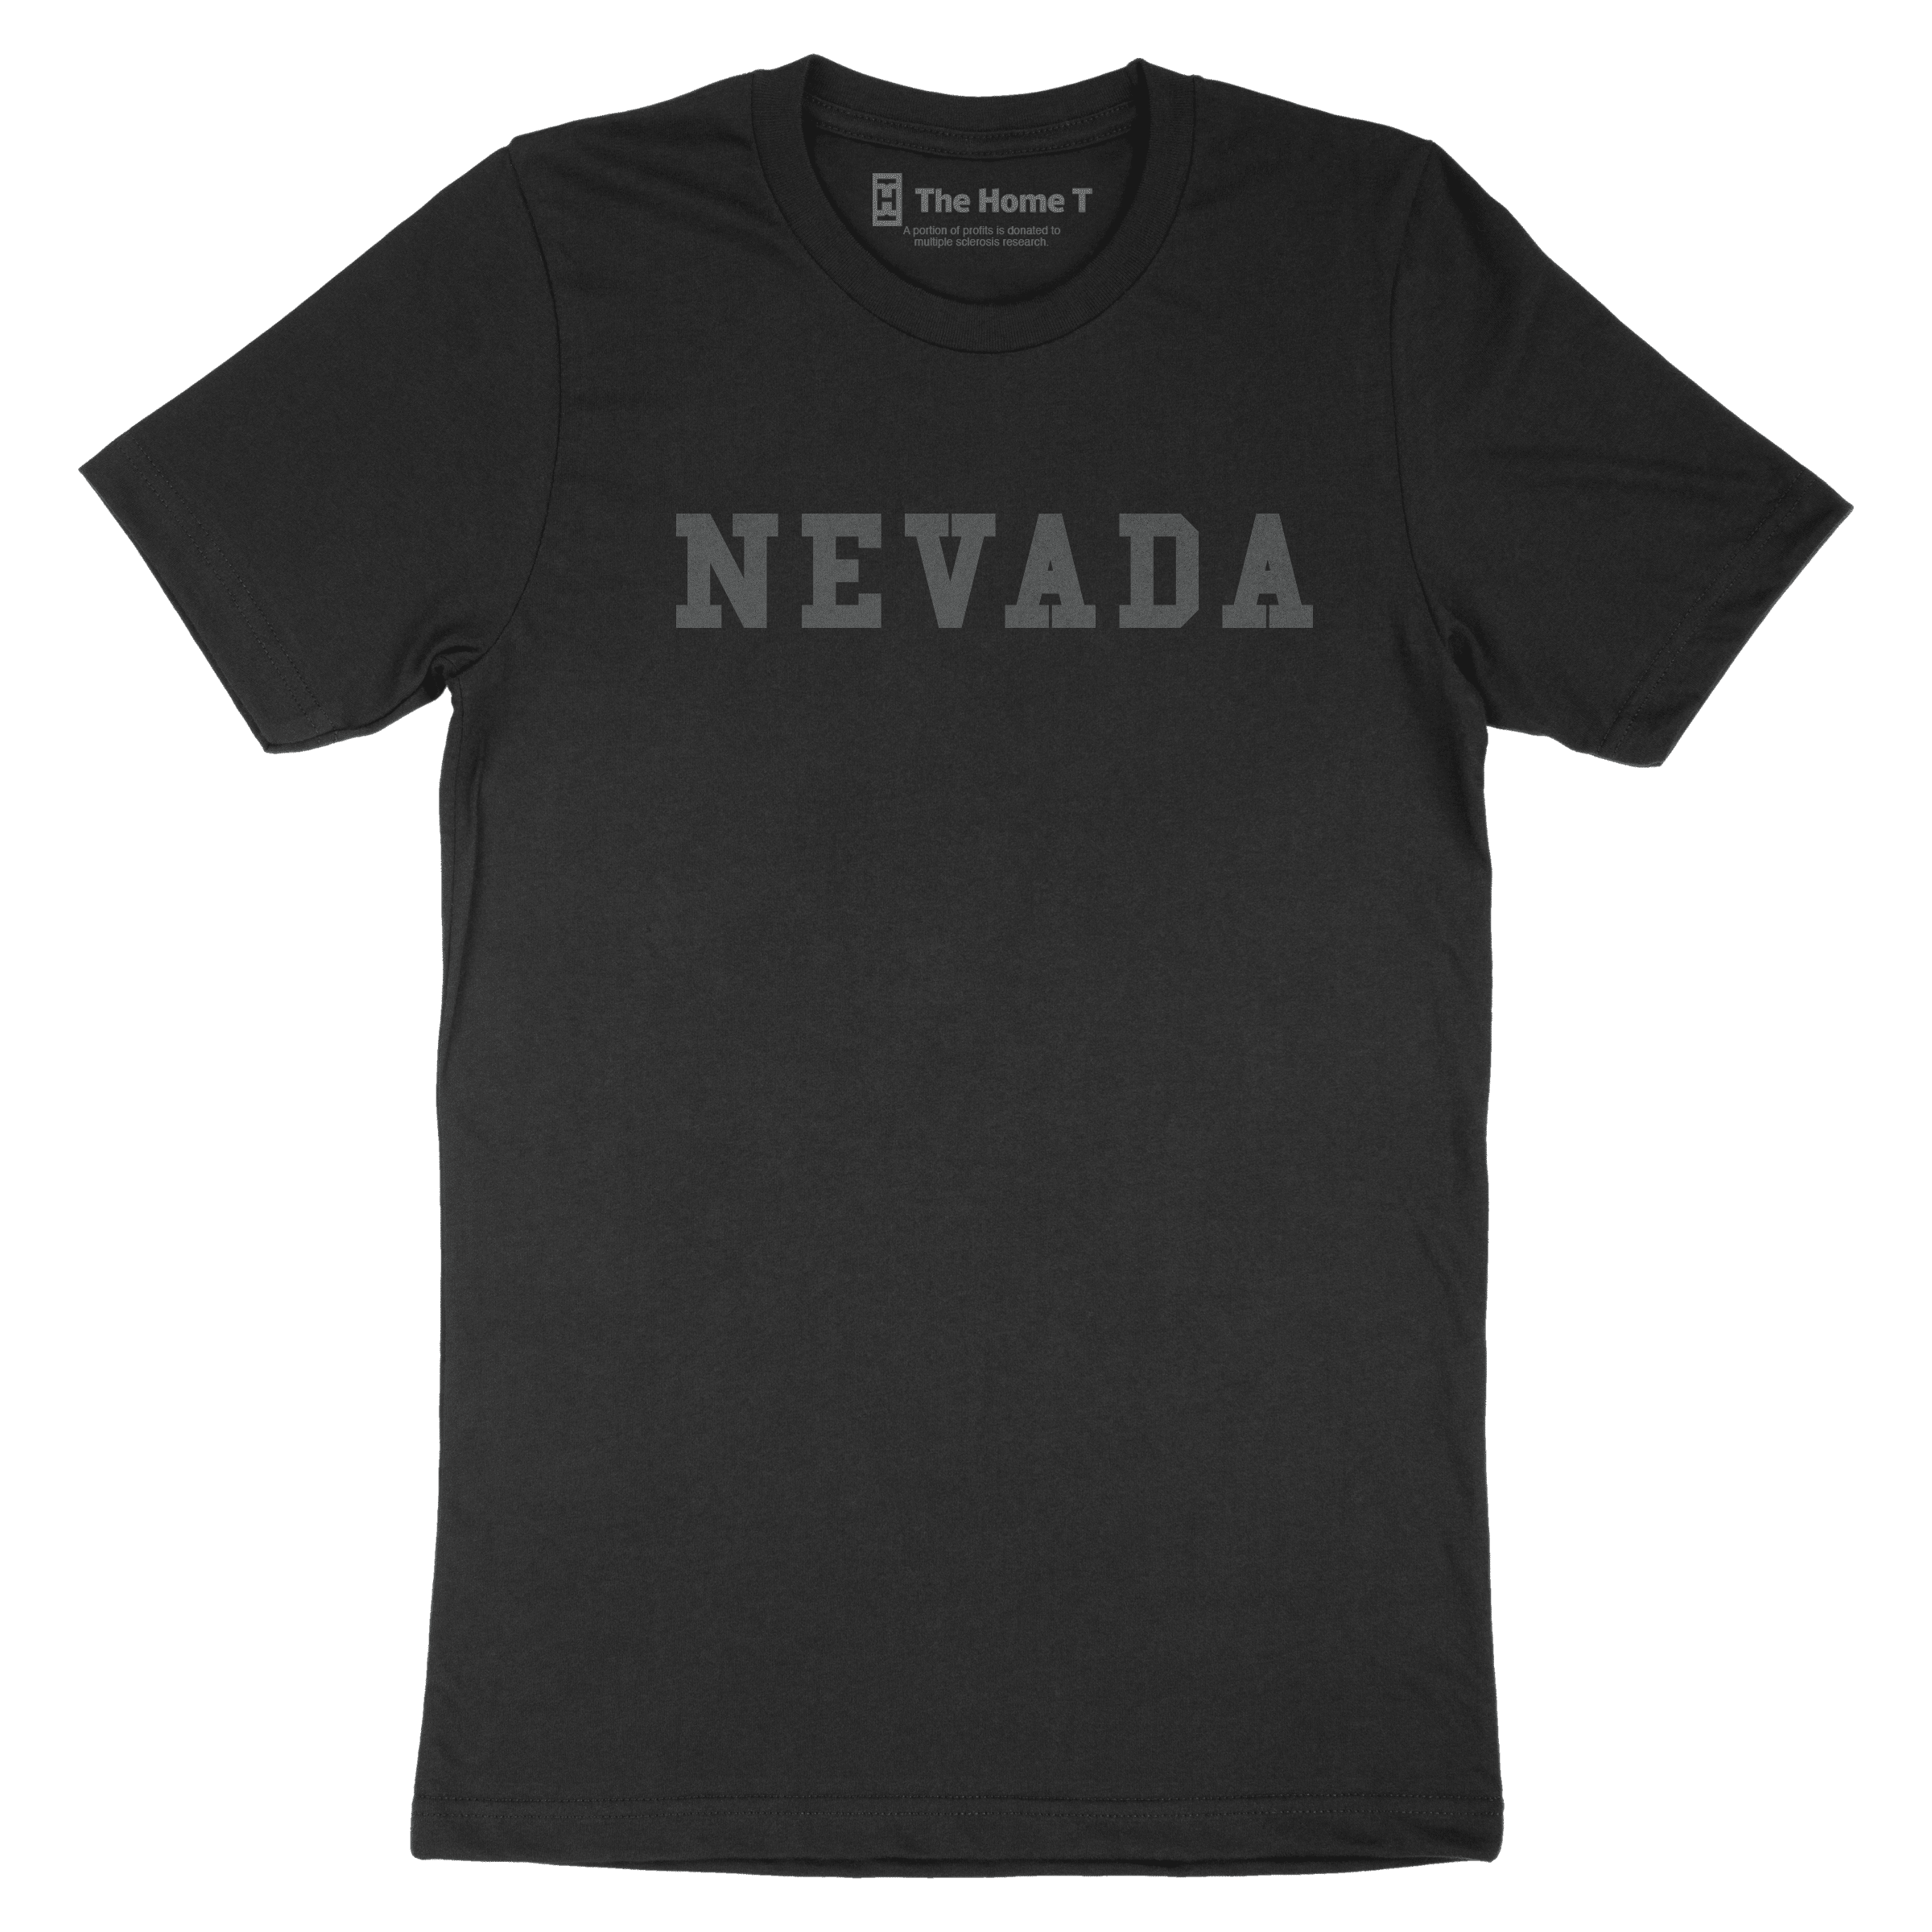 Nevada Black on Black